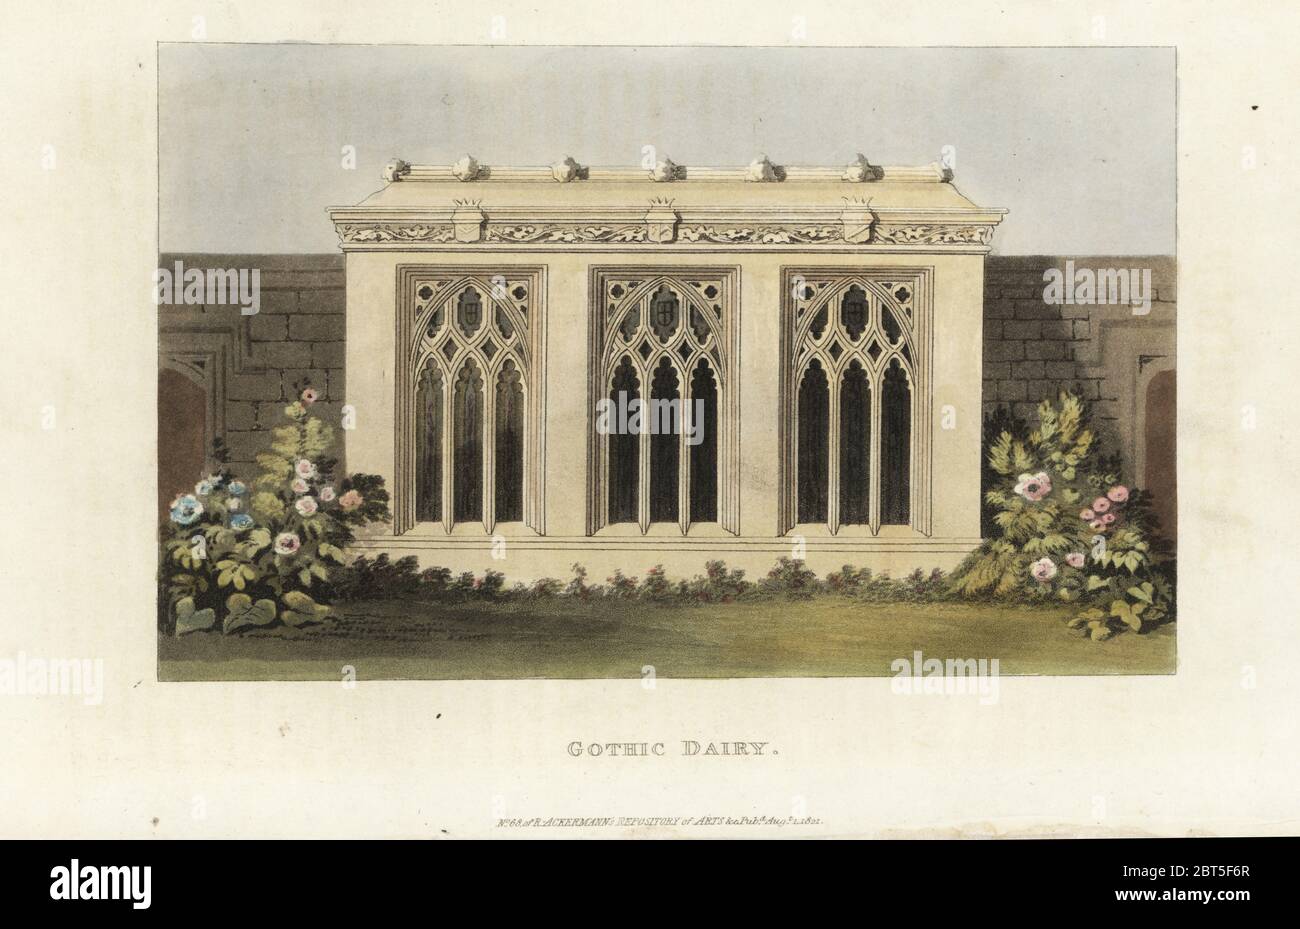 Diseño de una lechería gótica para una casa solariega. Grabado de copperplate de color a mano del repositorio de Artes de Rudolph Ackermanns, Londres, 1821. Foto de stock